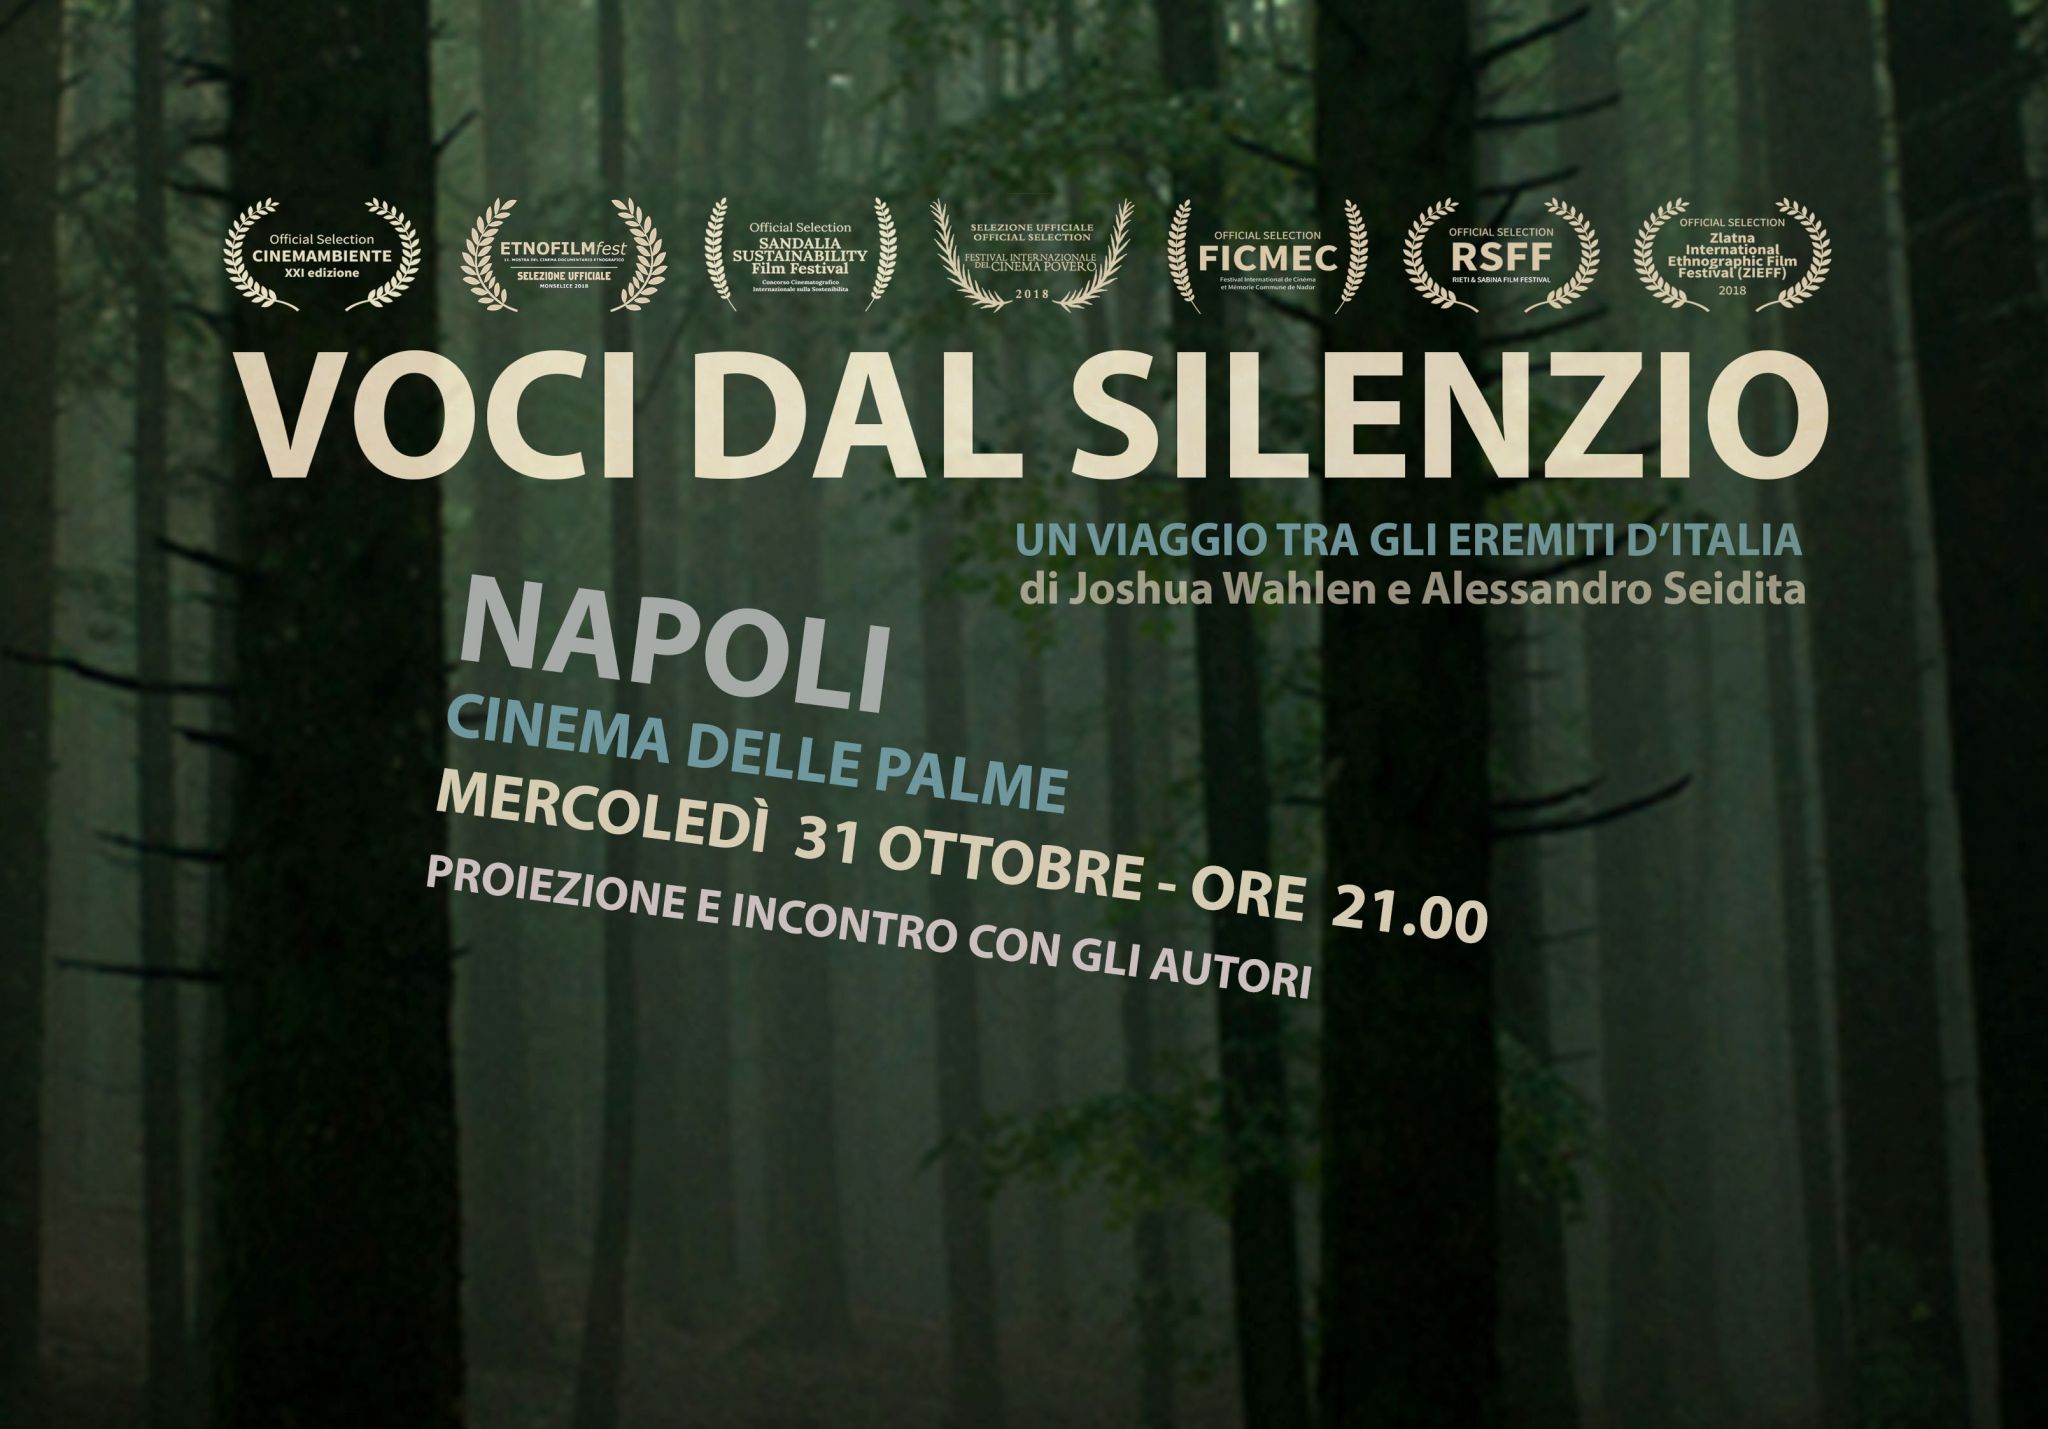 ‘Voci dal Silenzio’ arriva a Napoli. Domani 31 ottobre in anteprima regionale al cinema Delle Palme